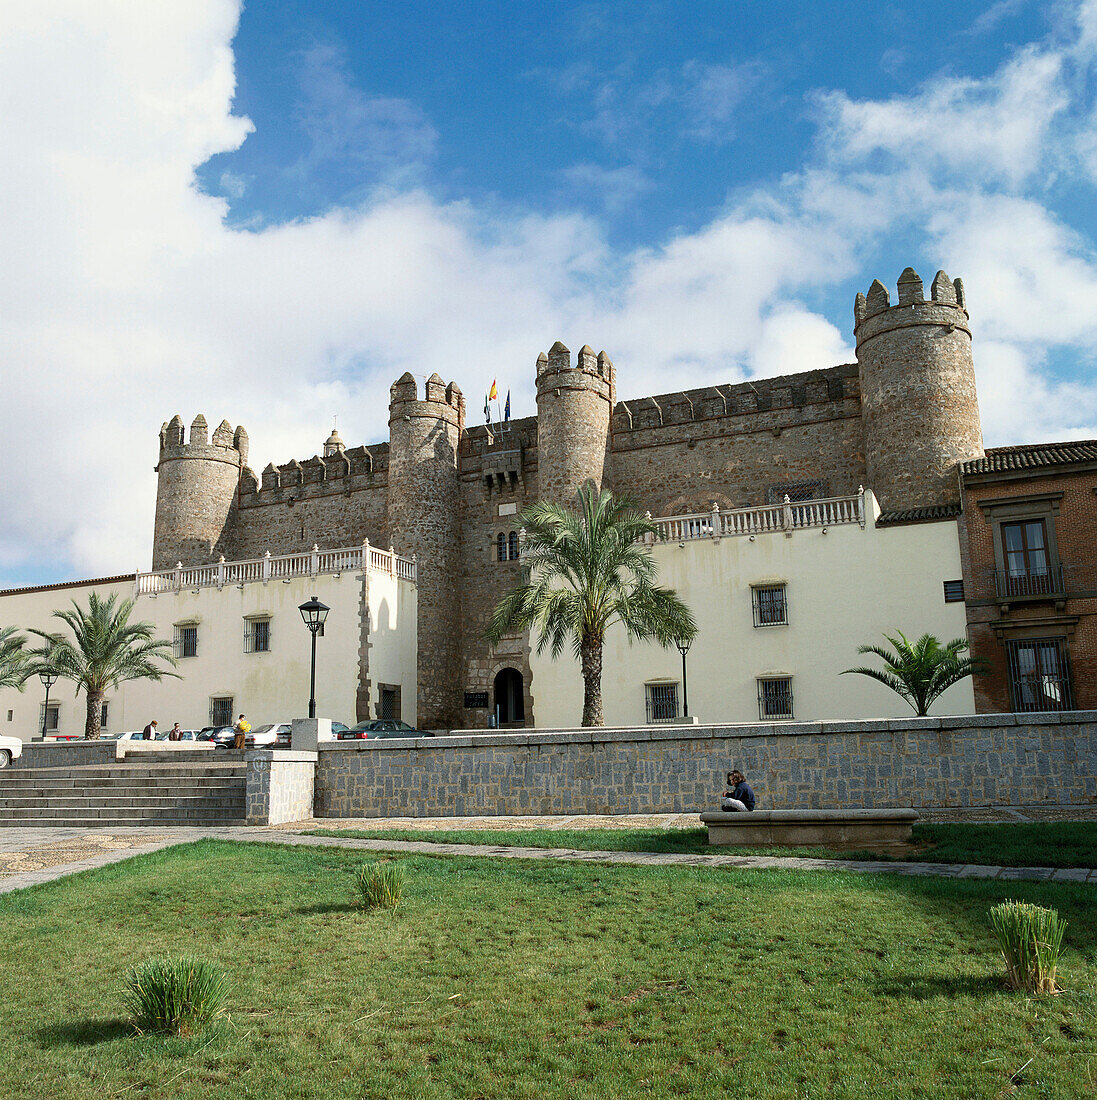 Parador Nacional (state-run hotel) in 15th c. Castle. Zafra. Badajoz province, Spain